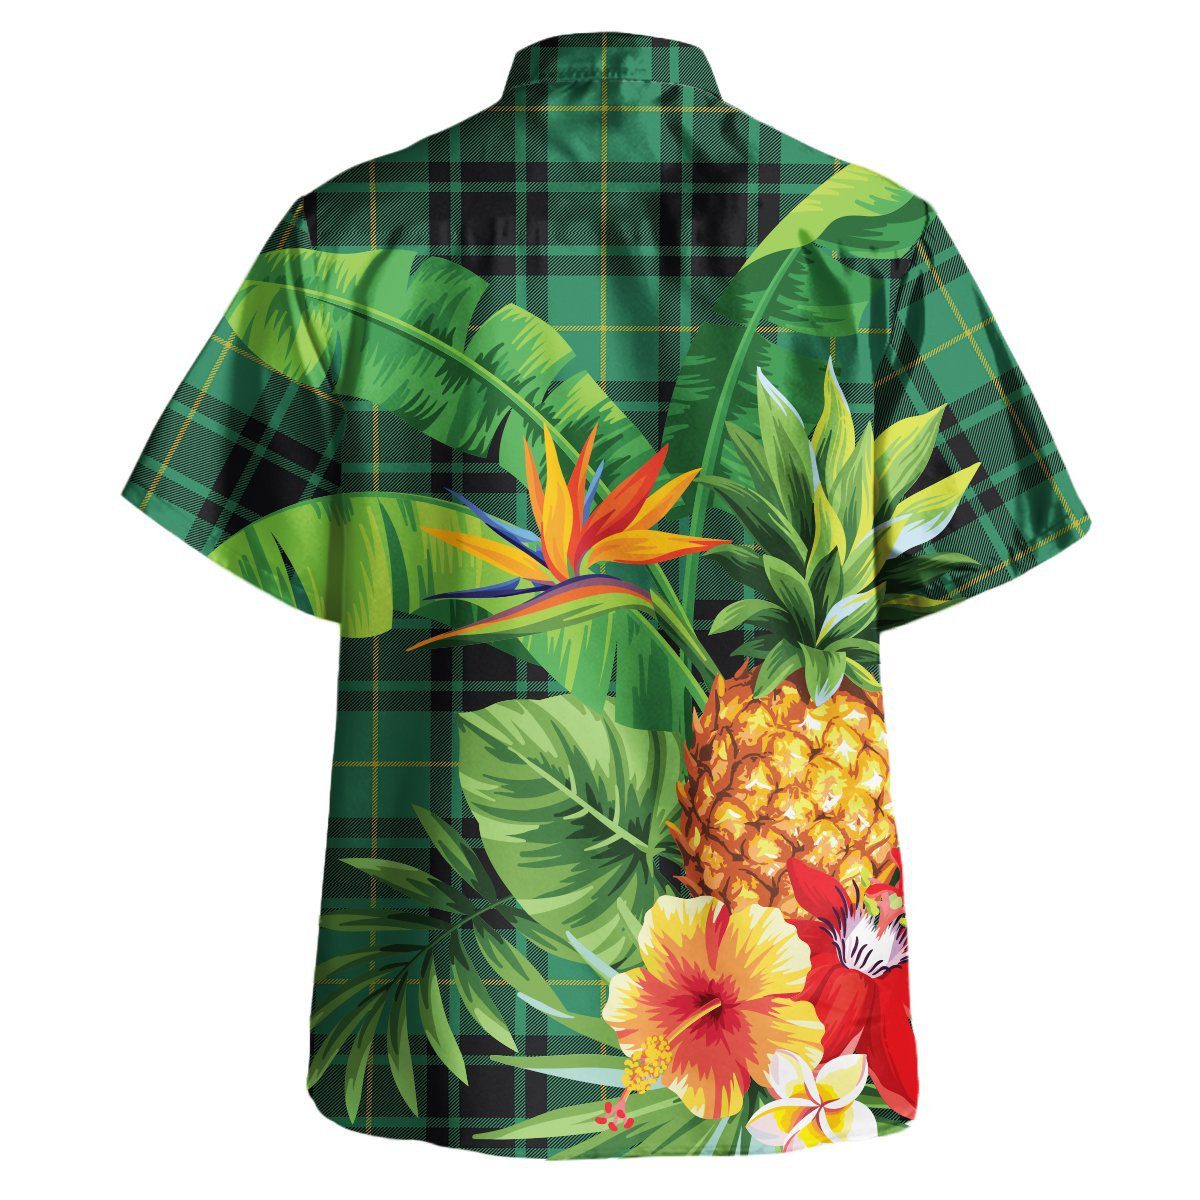 MacArthur Ancient Tartan Aloha Shirt version 2